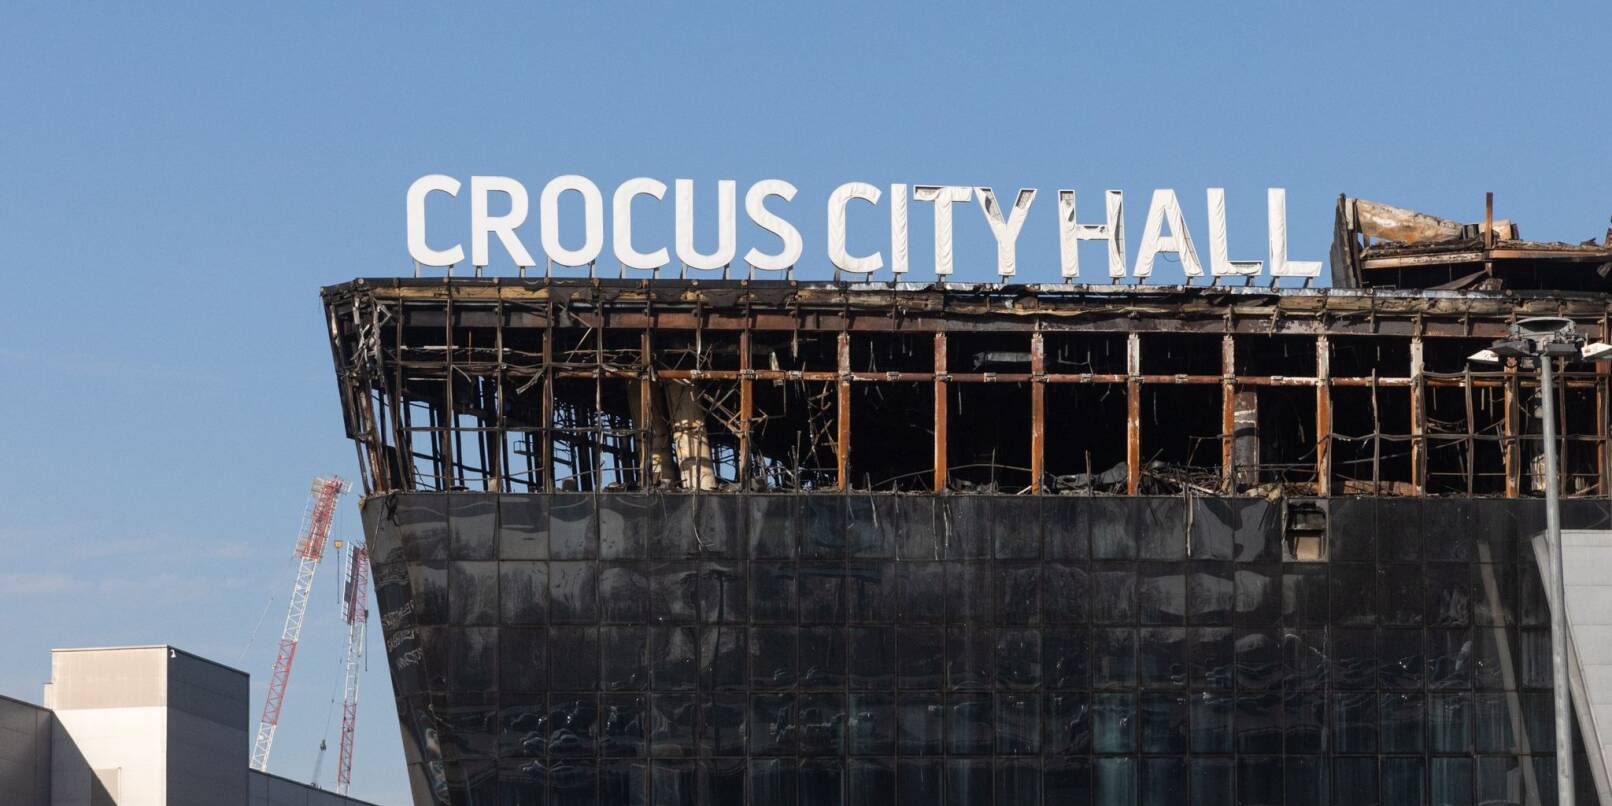 Blick auf die bei einem Terroranschlag beschädigte Konzerthalle Crocus City Hall. Bei dem Anschlag vom vergangenen Freitag waren mehr als 140 Menschen getötet und hunderte verletzt worden, als Bewaffnete in der Konzerthalle Crocus City Hall um sich schossen.